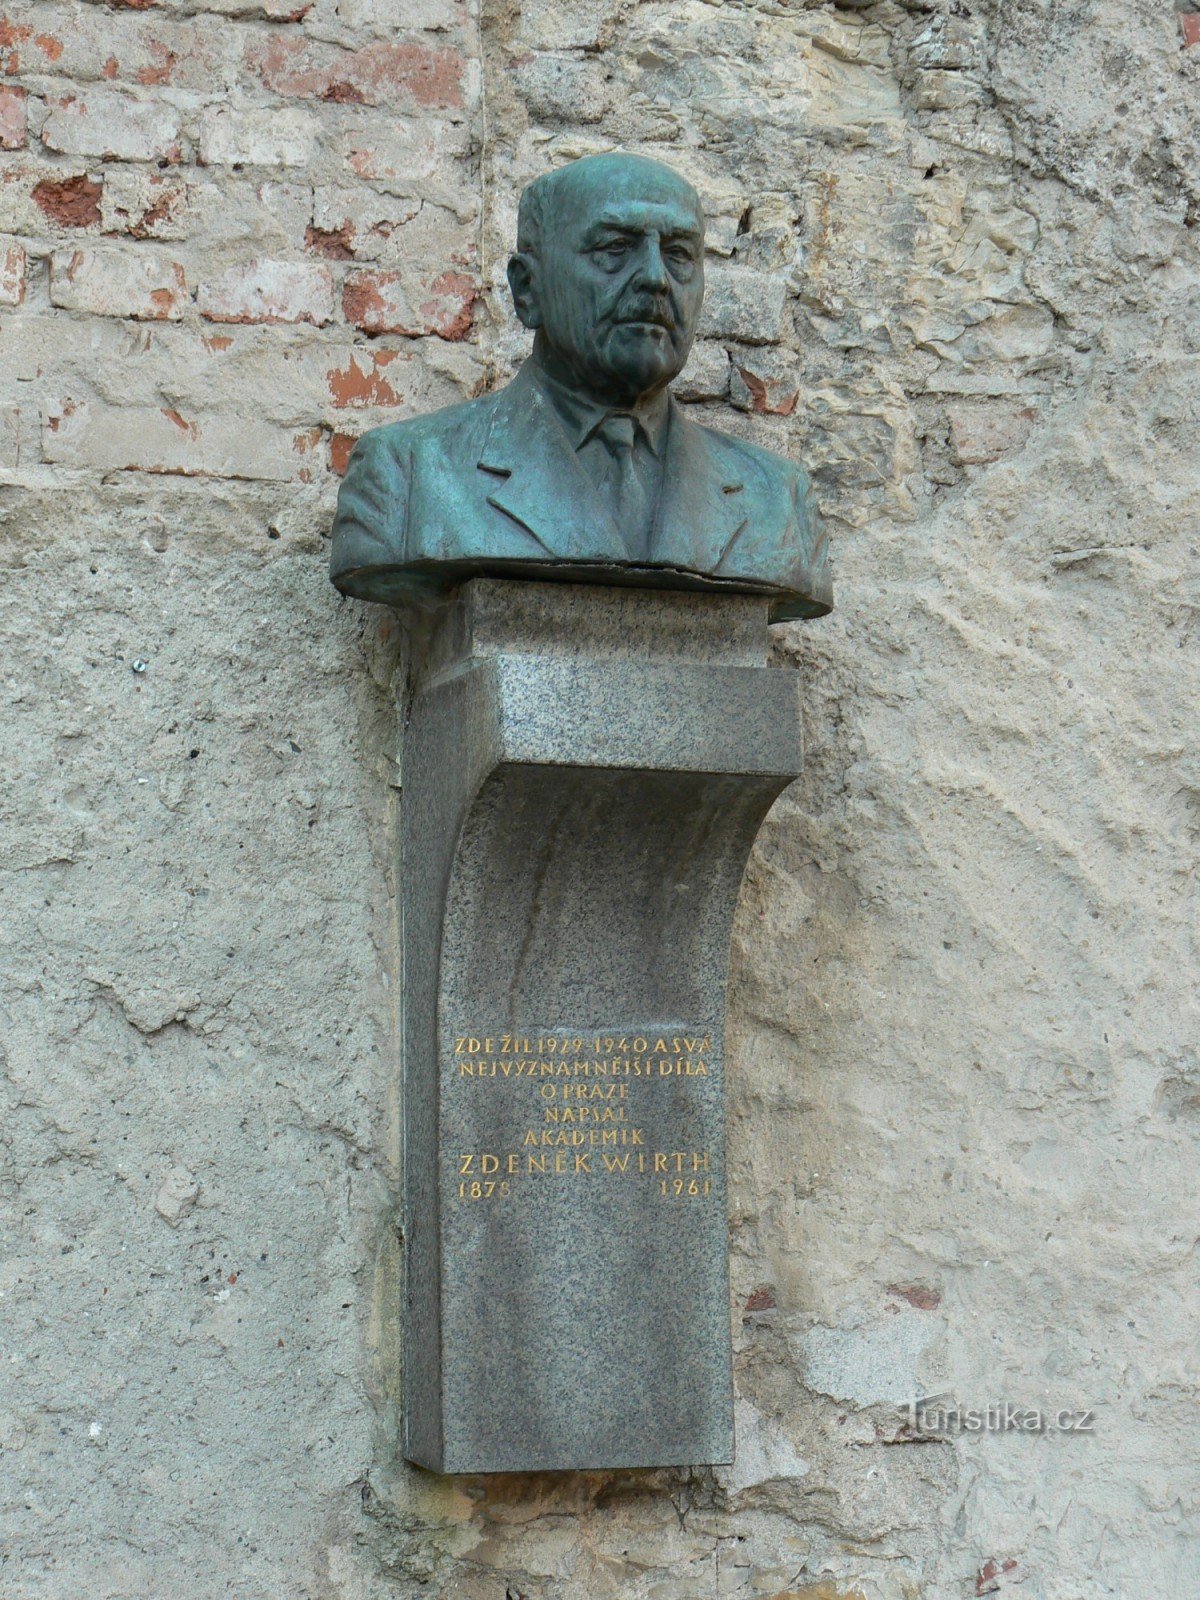 Placa comemorativa de Zdeněk Wirth